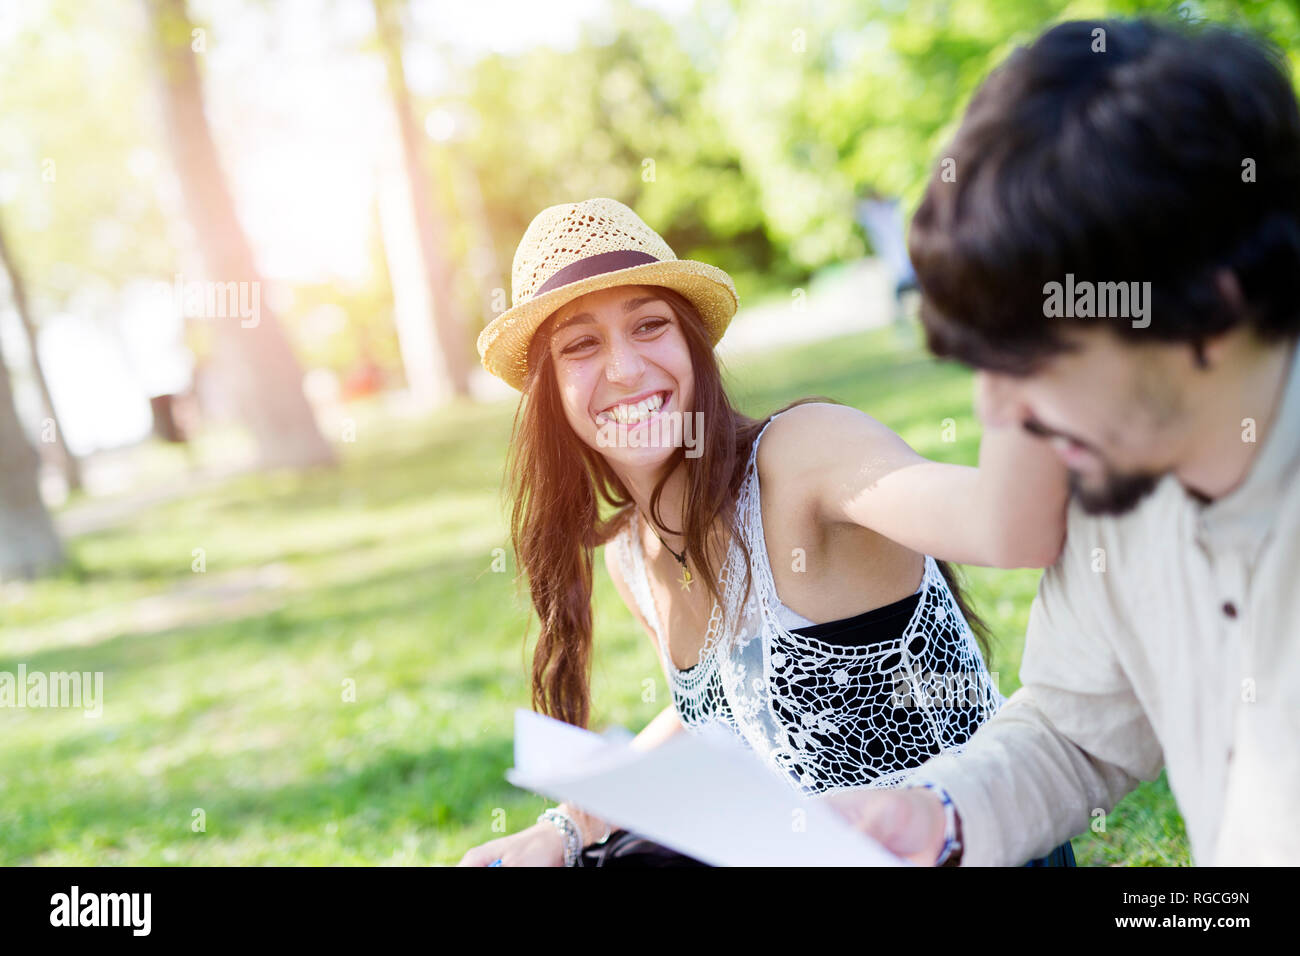 Portrait von lachende Junge Frau Spaß haben in einem Park mit ihren Kommilitonen Stockfoto